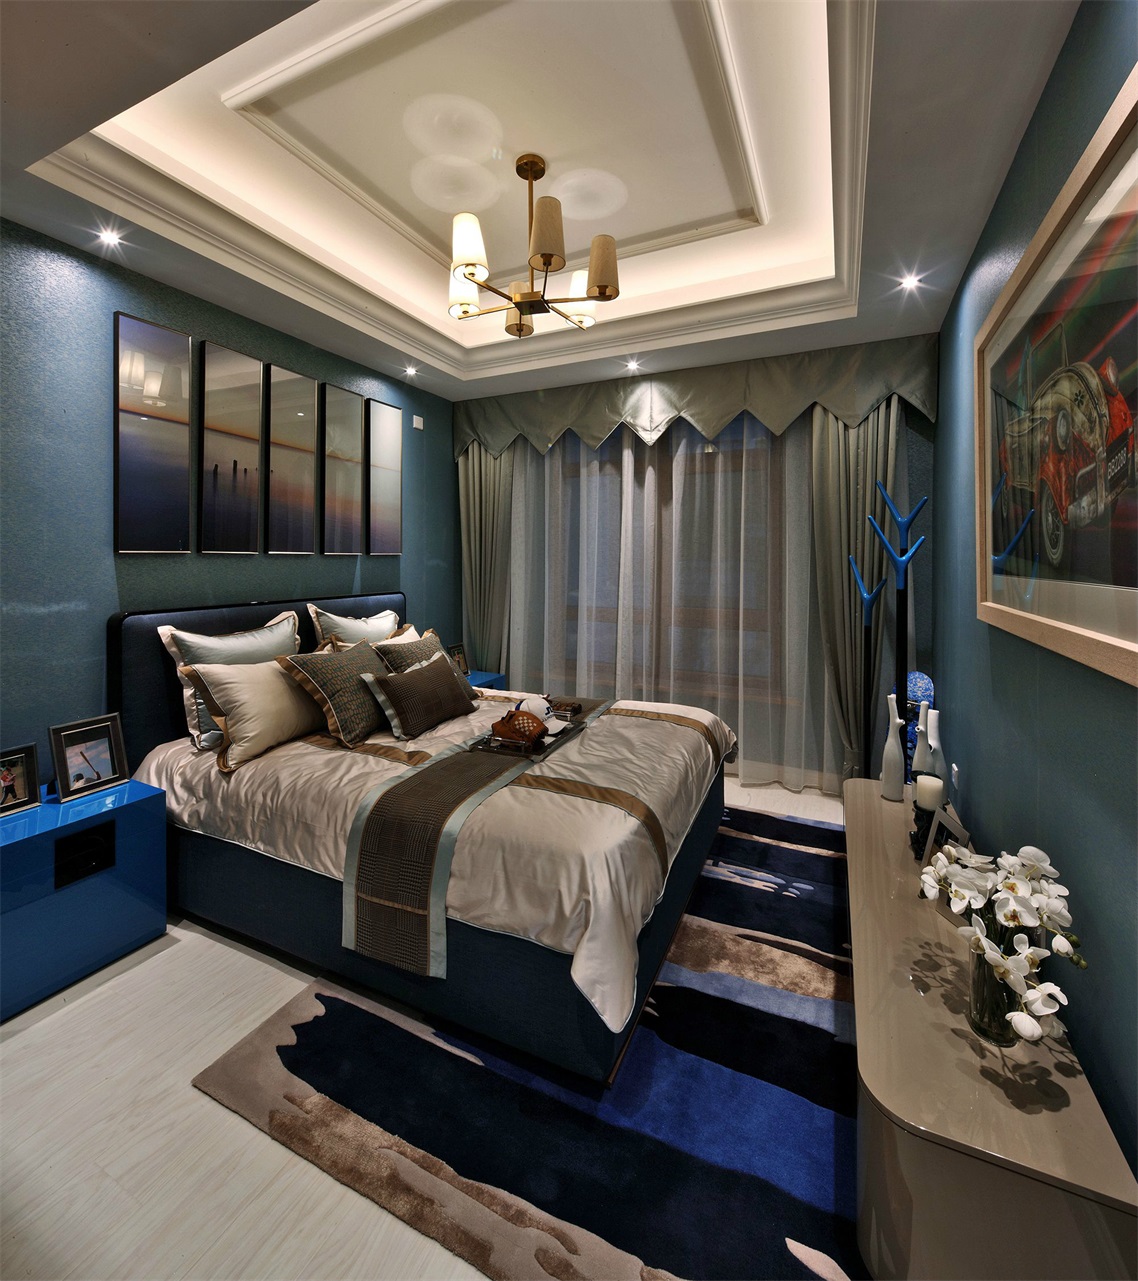 室内配色带来一种诗意而情趣的氛围感，蓝米色地毯与背景墙相互呼应。